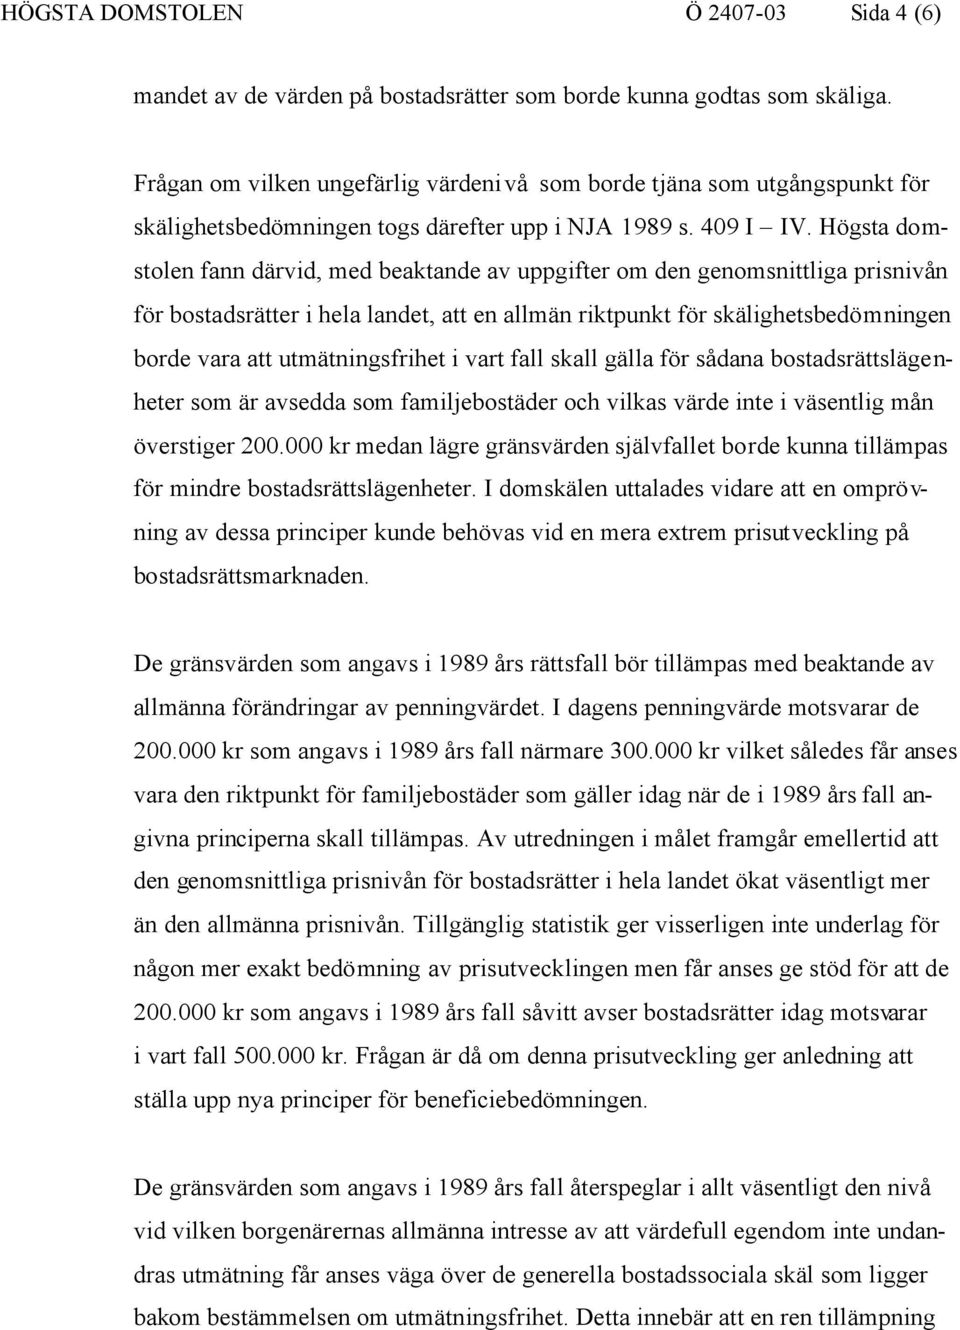 HÖGSTA DOMSTOLENS BESLUT - PDF Free Download